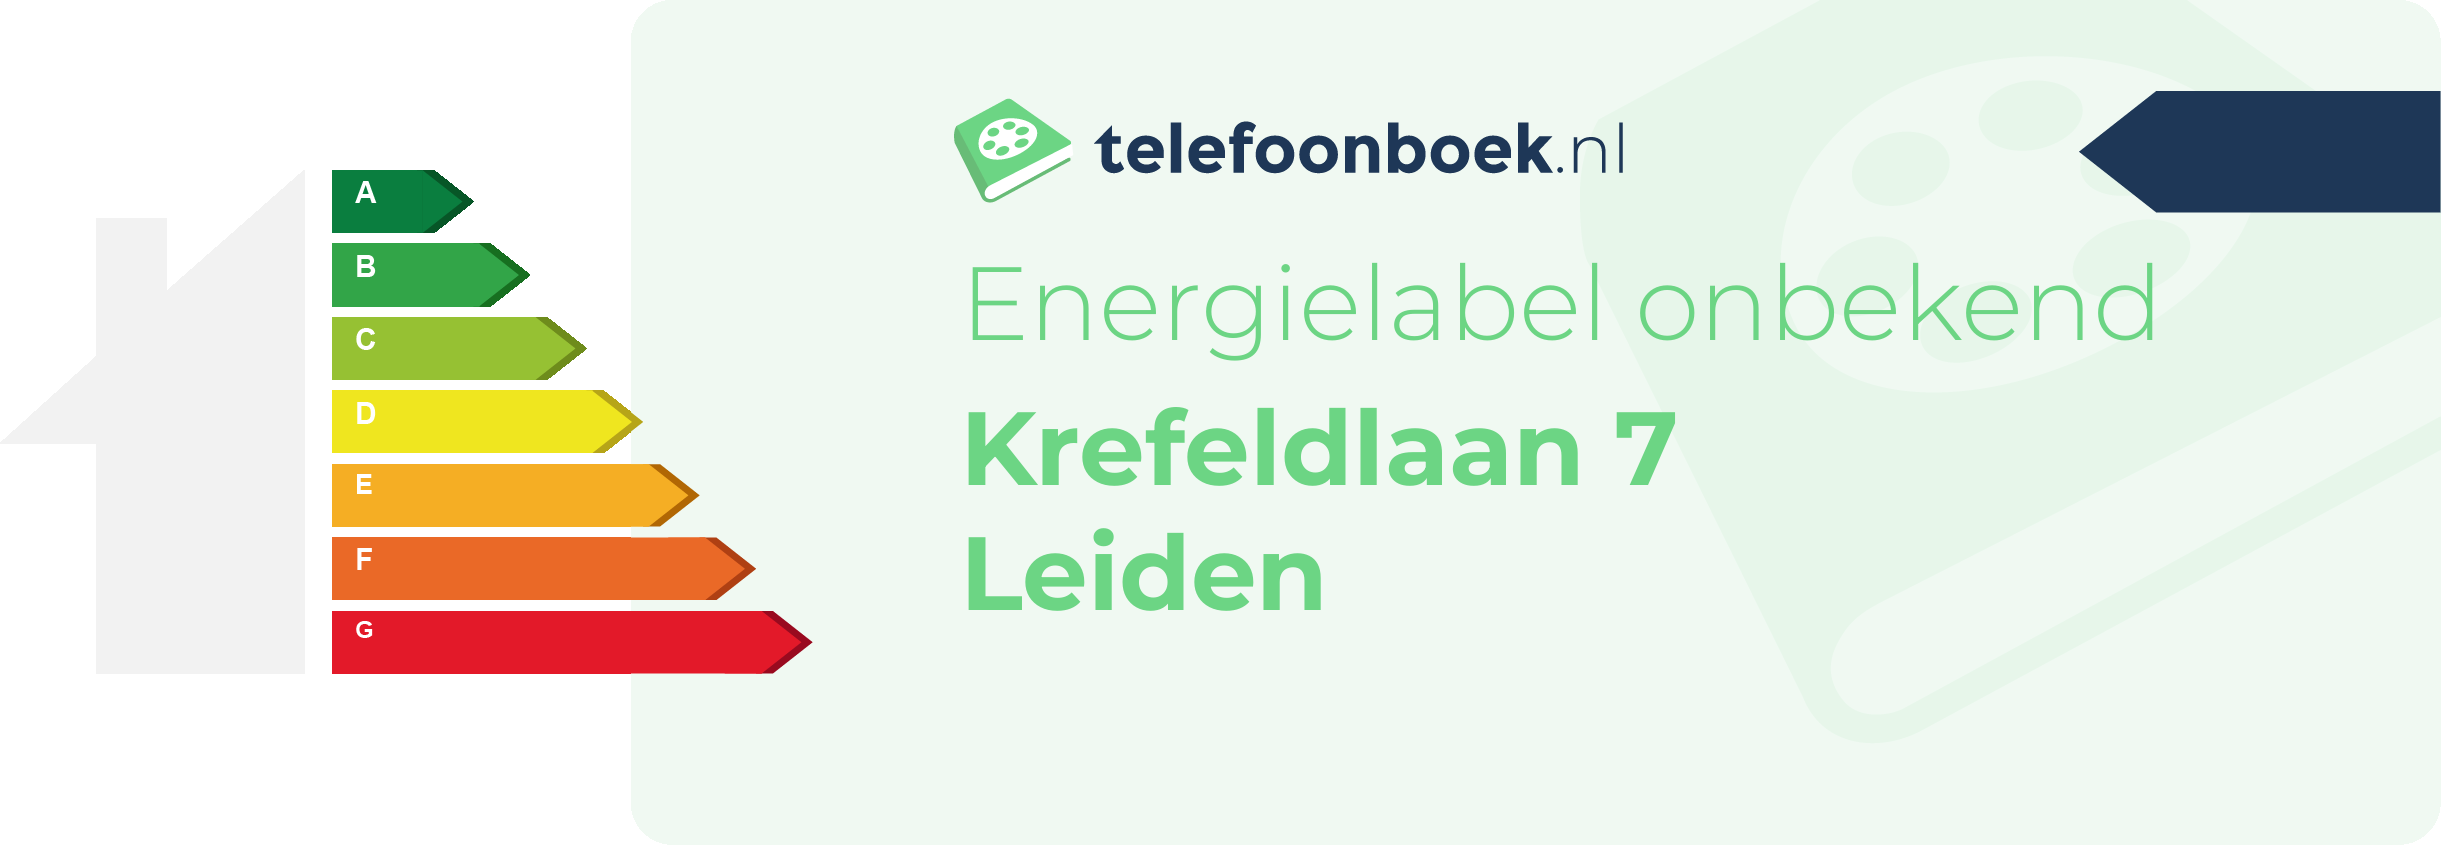 Energielabel Krefeldlaan 7 Leiden